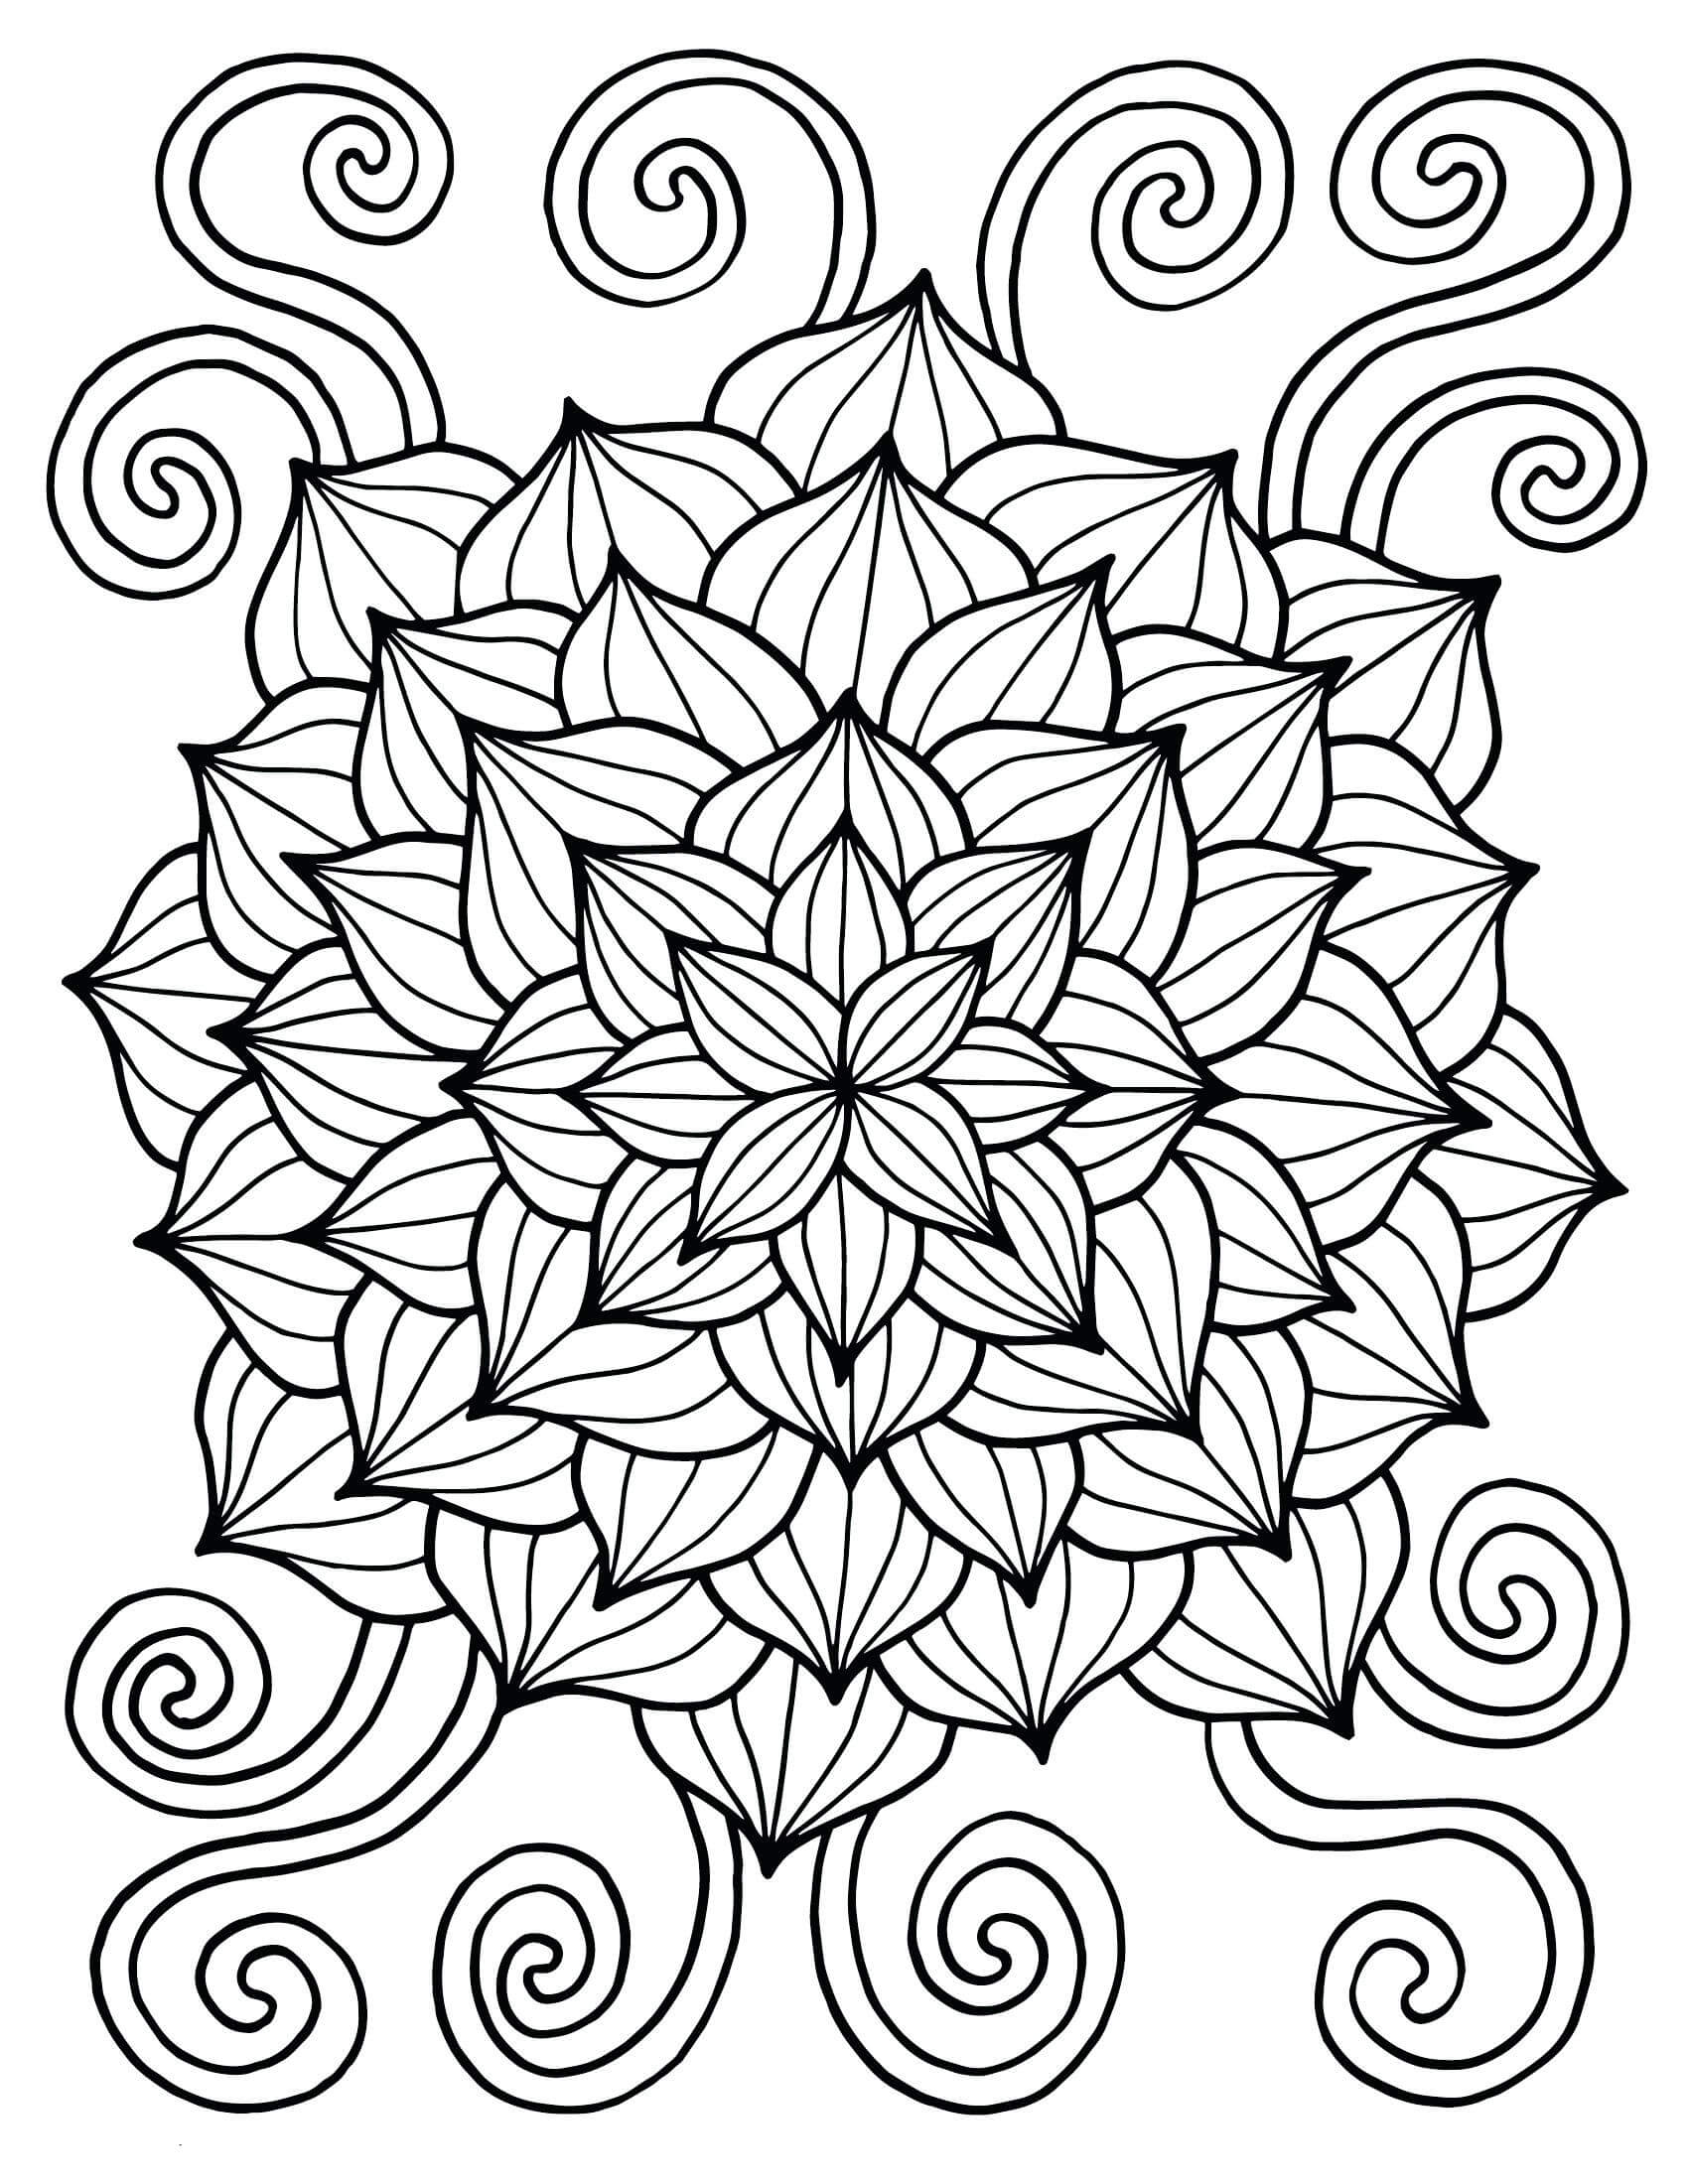 Mandala de Fleurs Pour Le Printemps coloring page